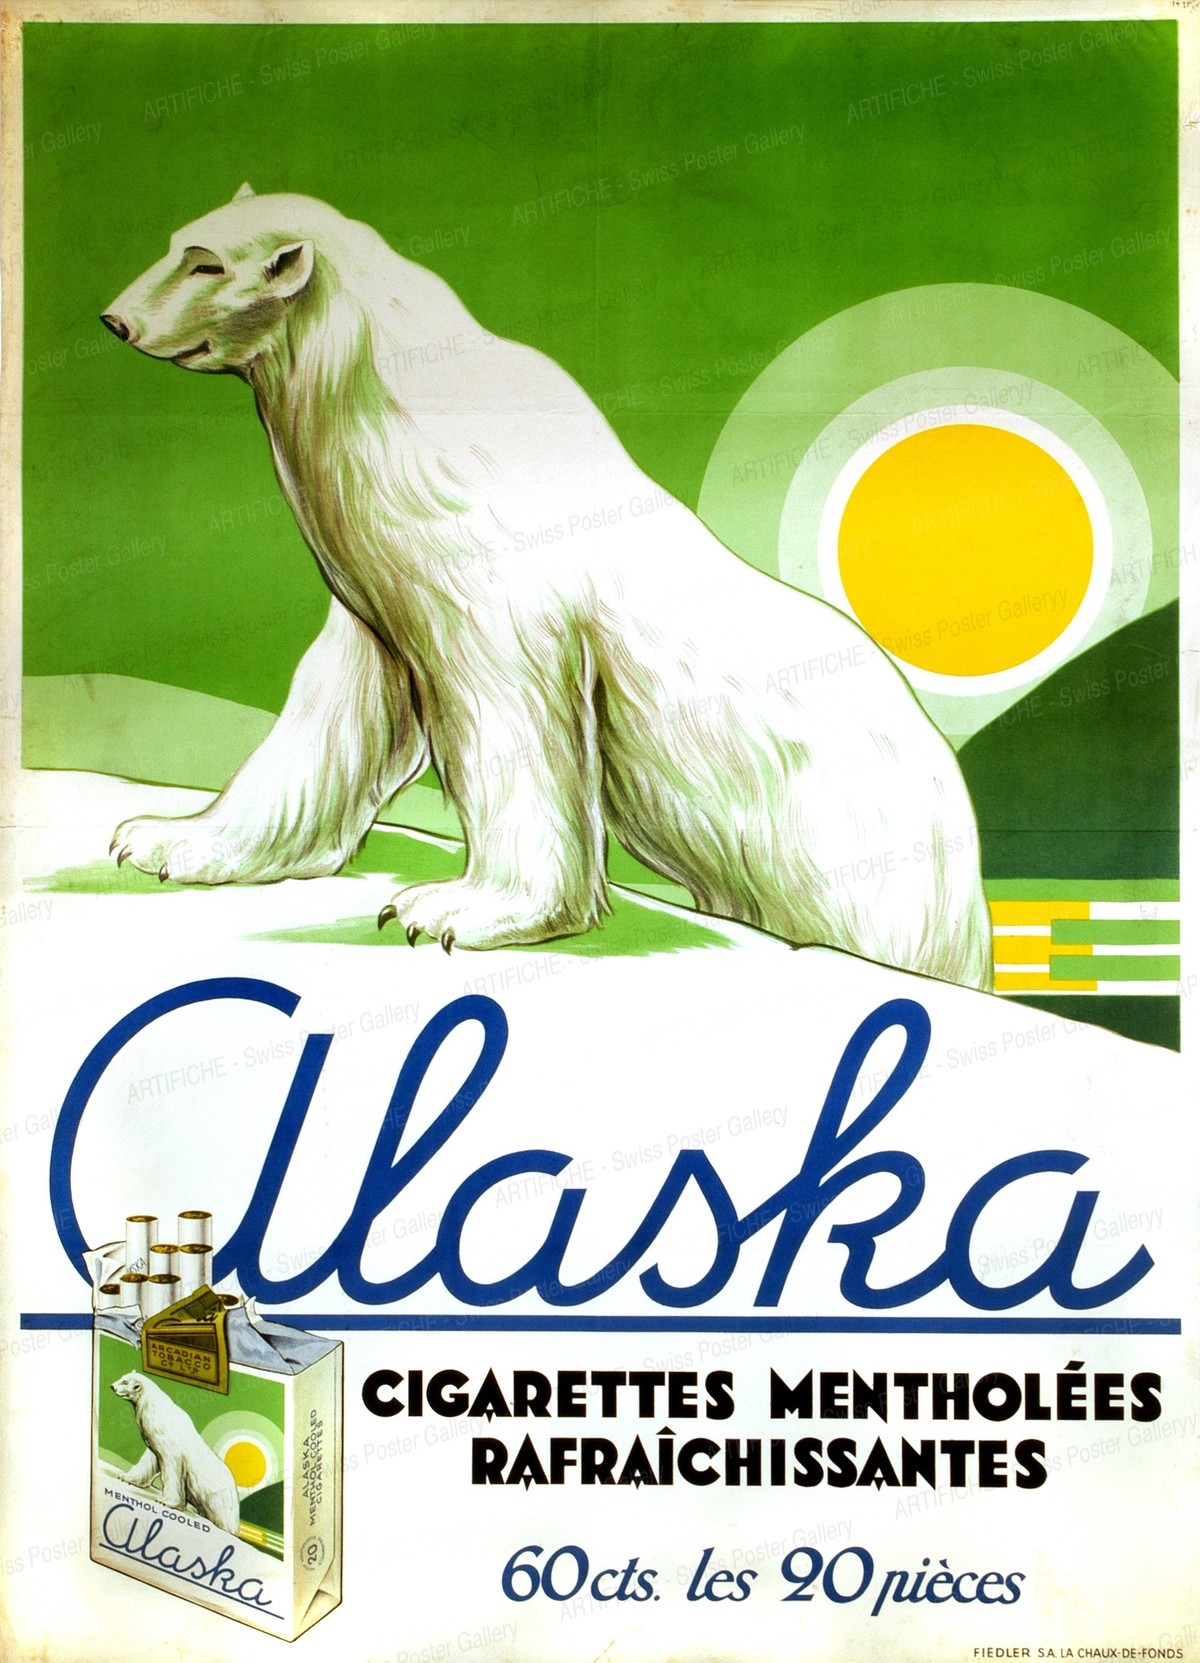 Alaska Cigarettes mentholées, Artist unknown